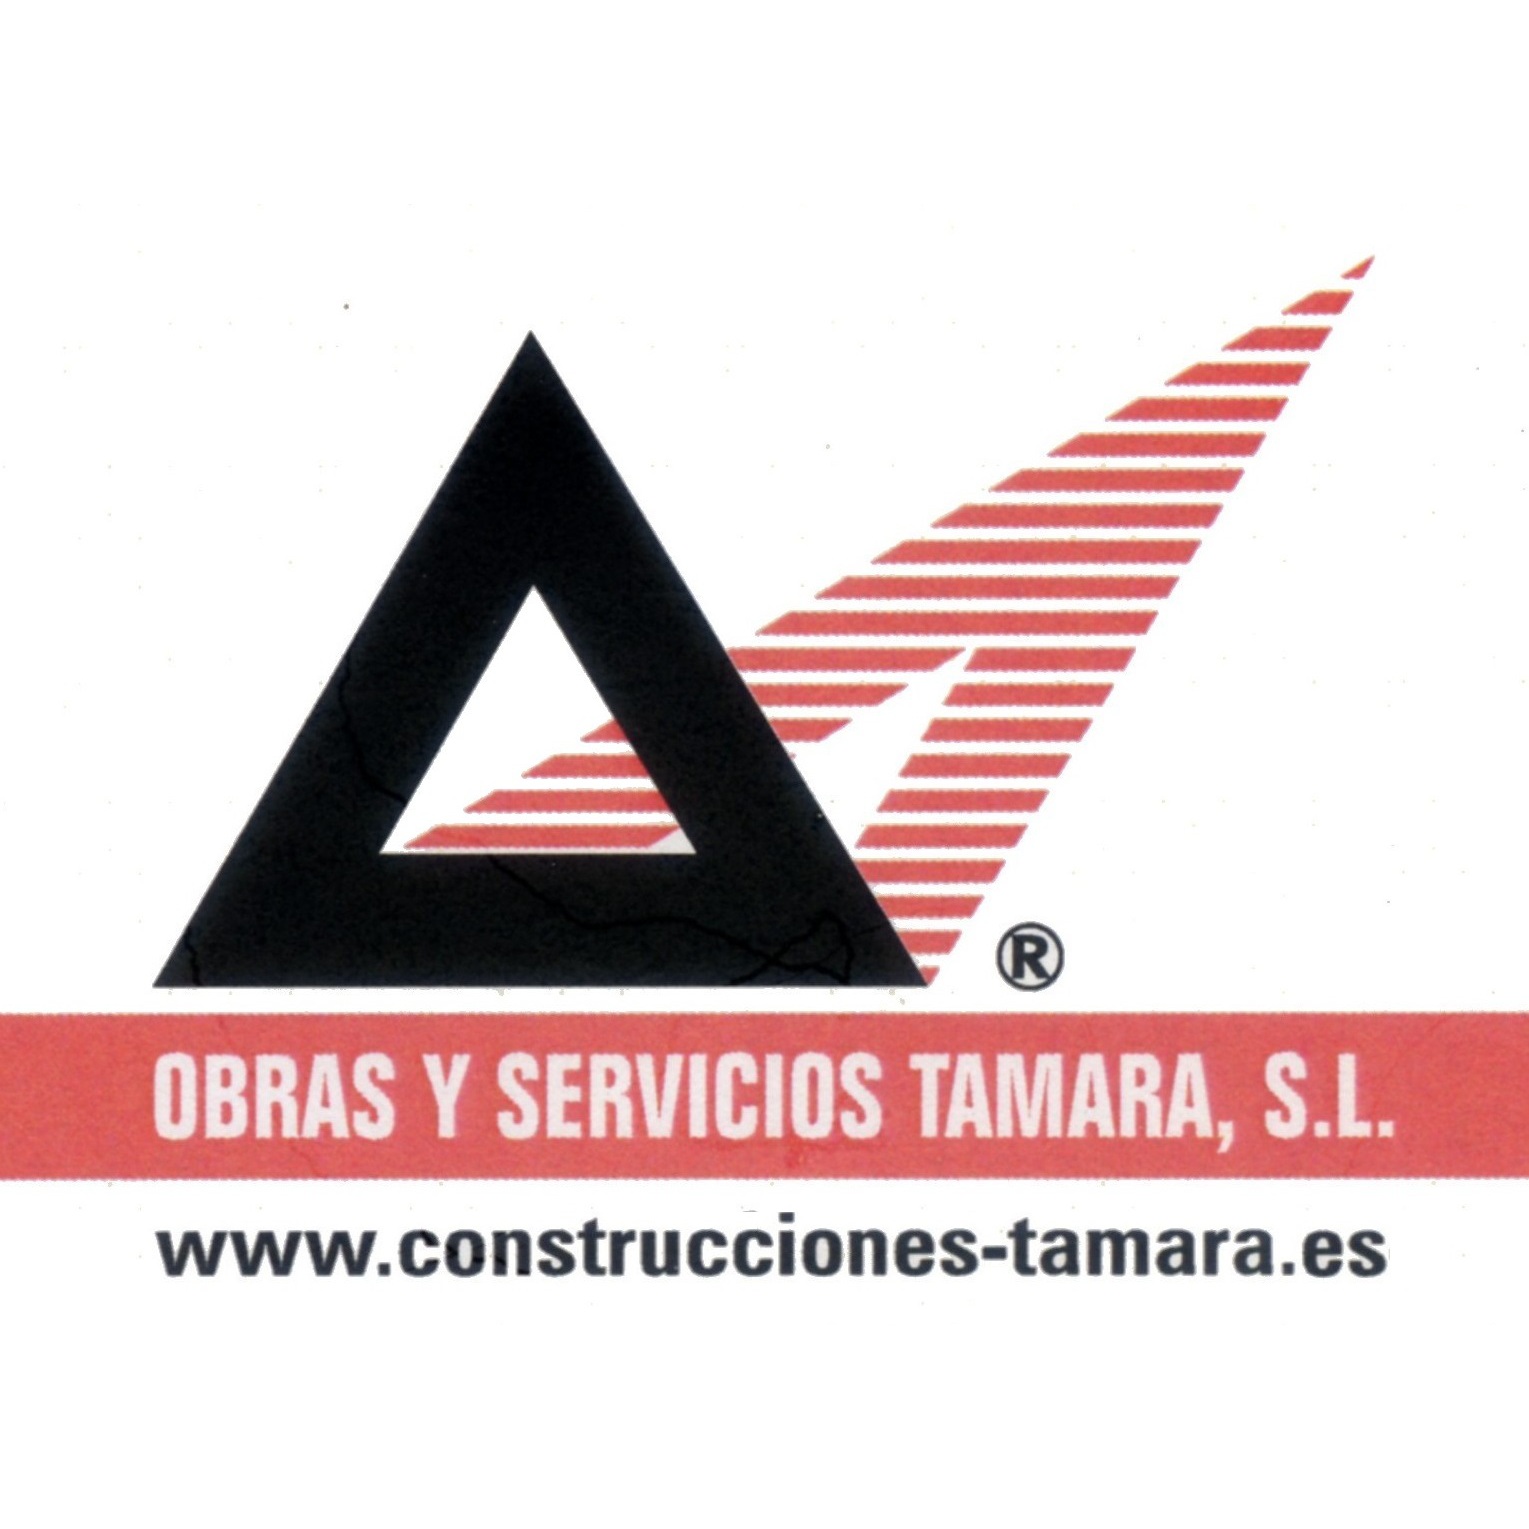 Obras Y Servicios Tamara S.L. Logo